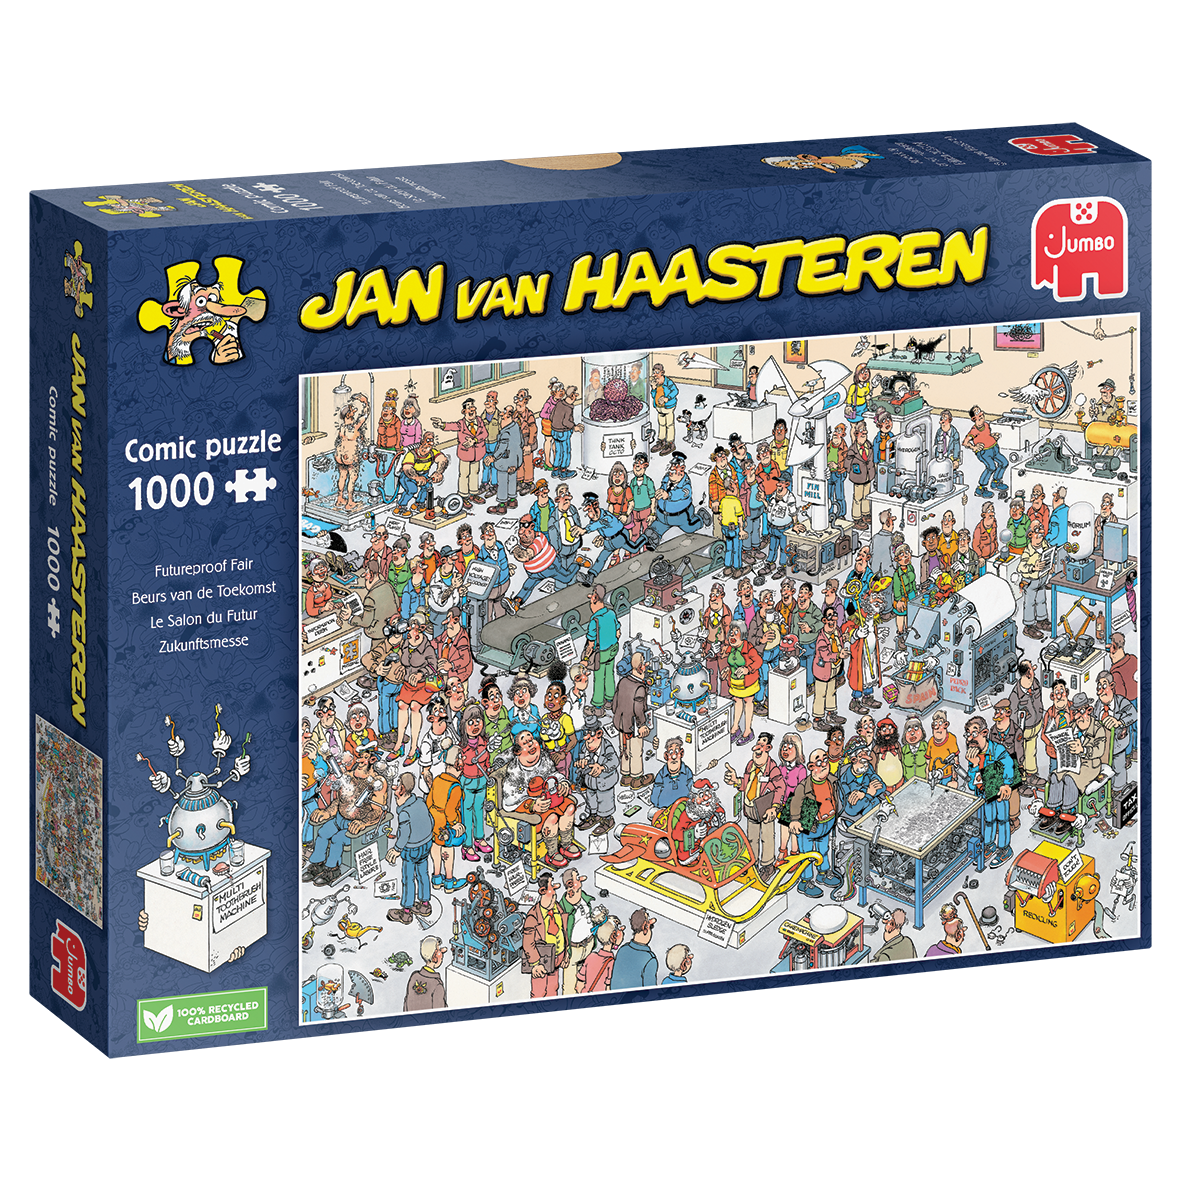 Futureproof Fair Jan van Haasteren